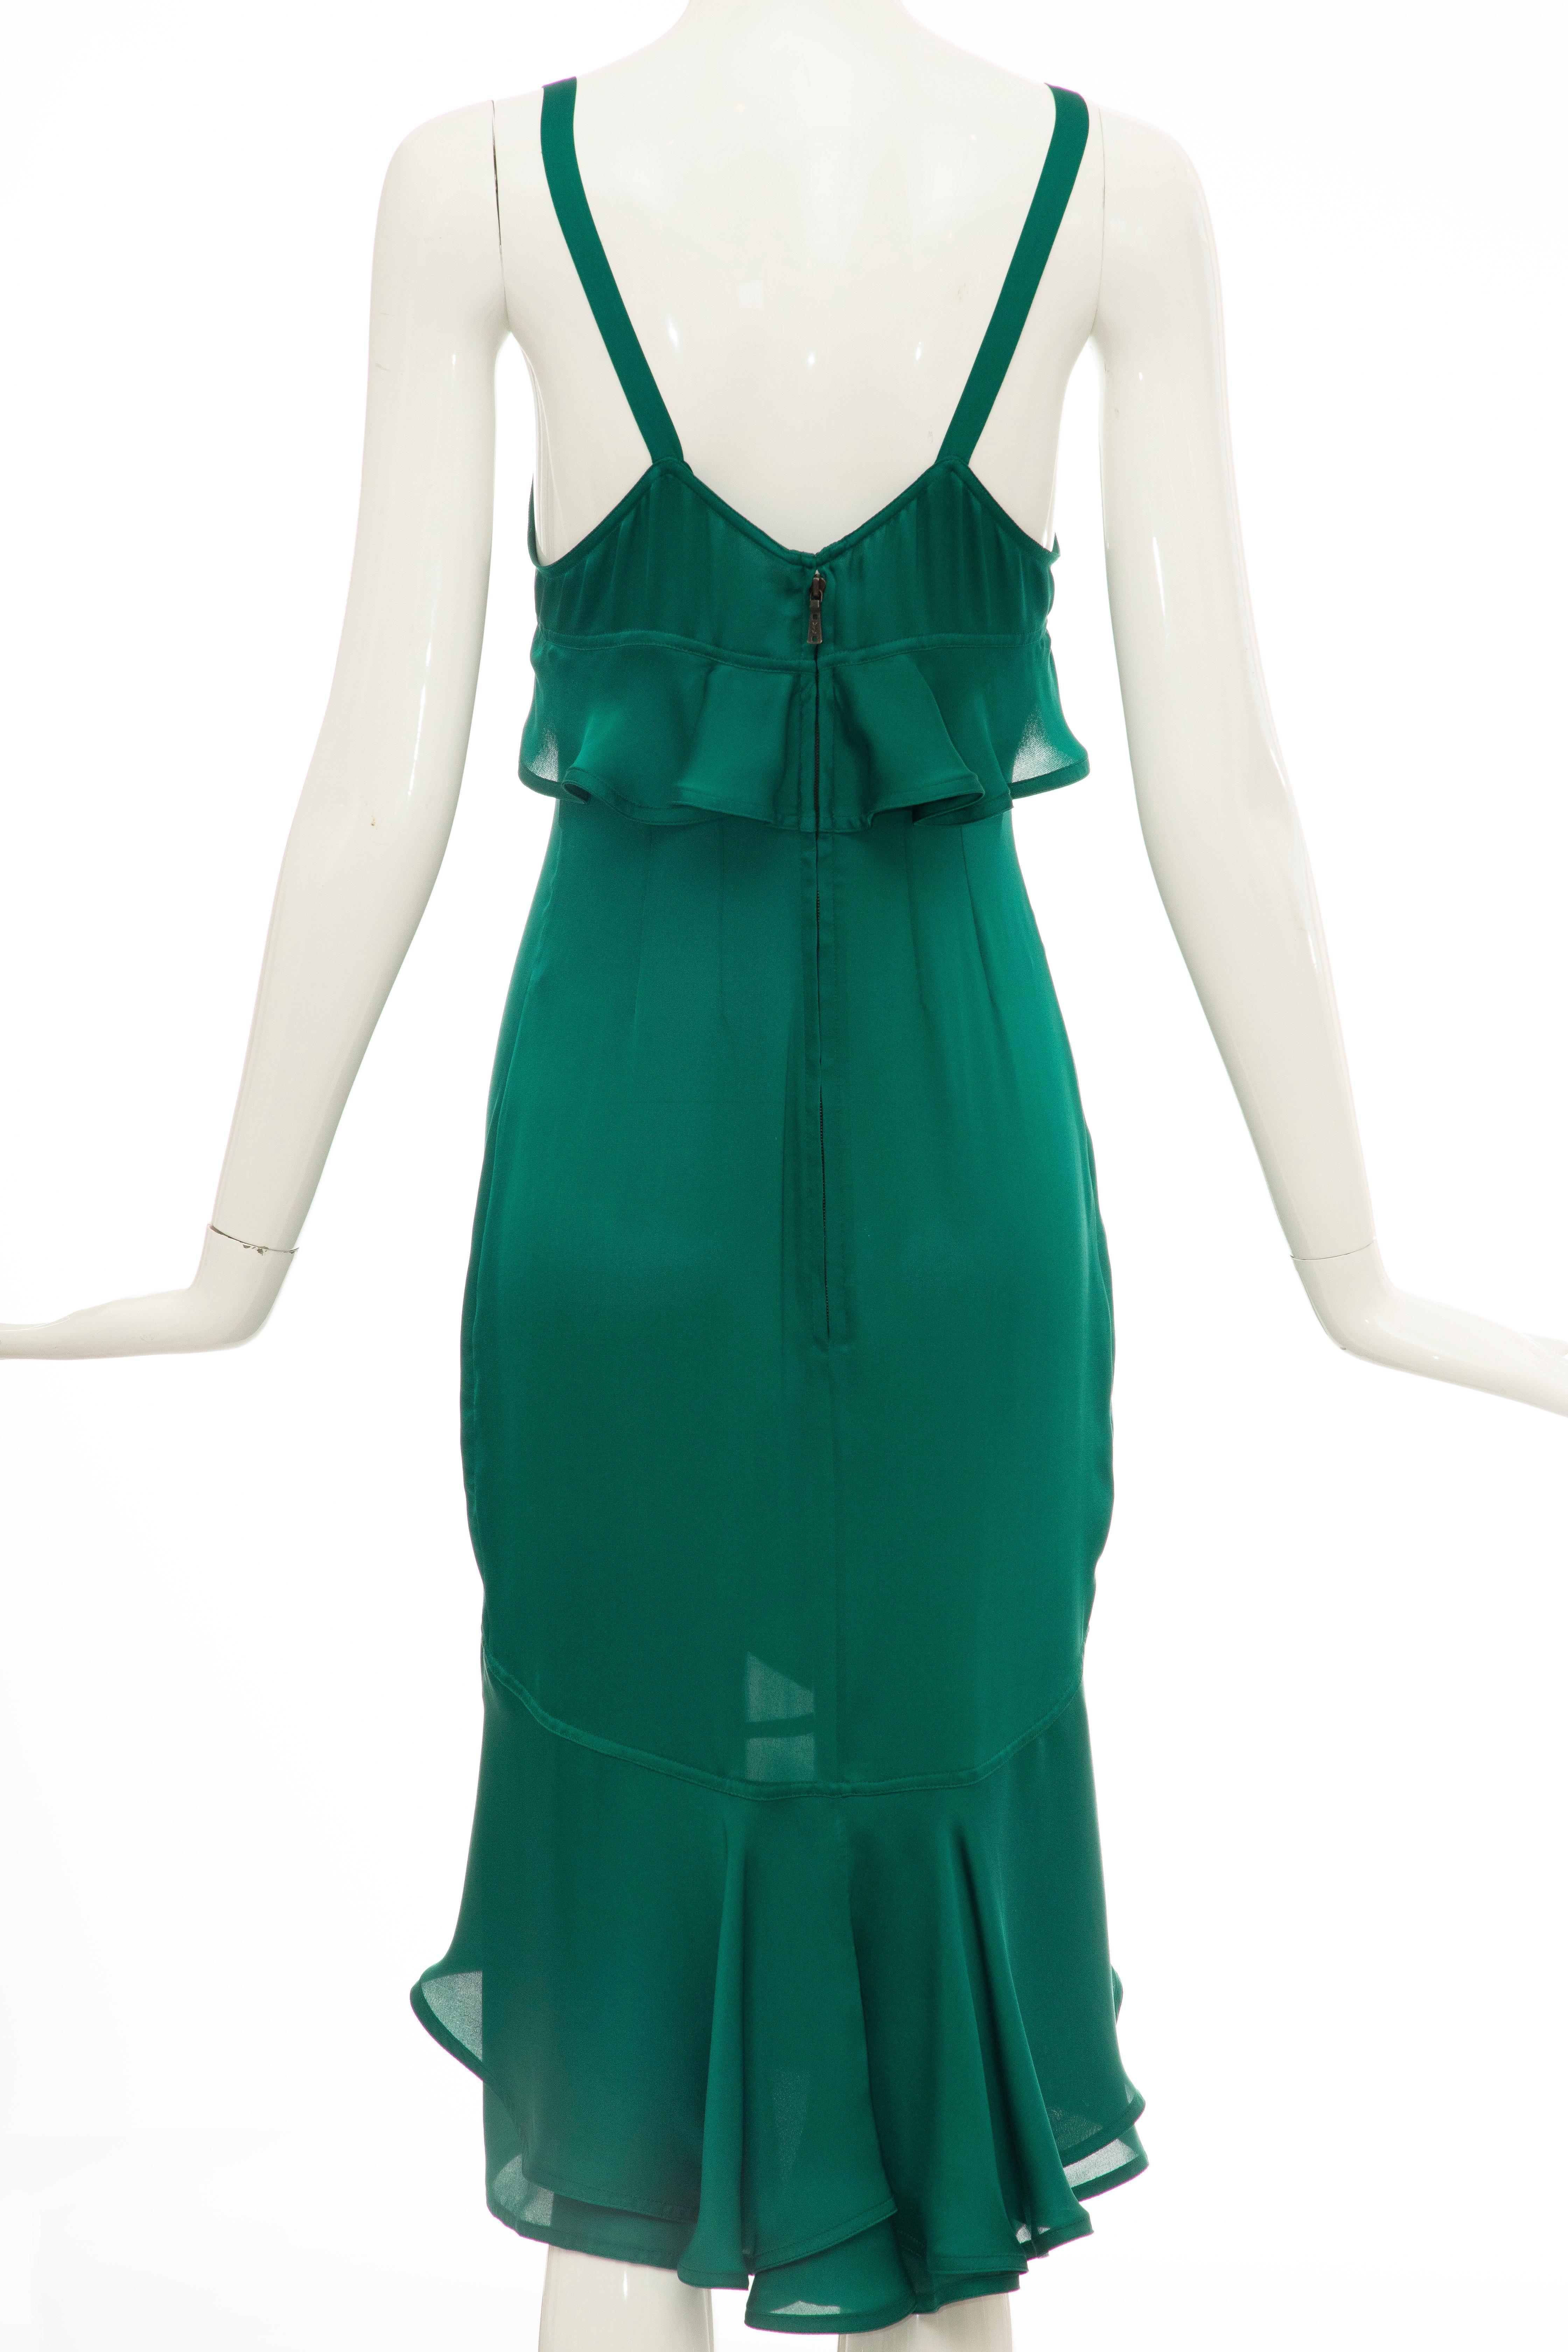 Tom Ford for Yves Saint Laurent Emerald Green Velvet Silk Dress Suit,  Fall 2003 9